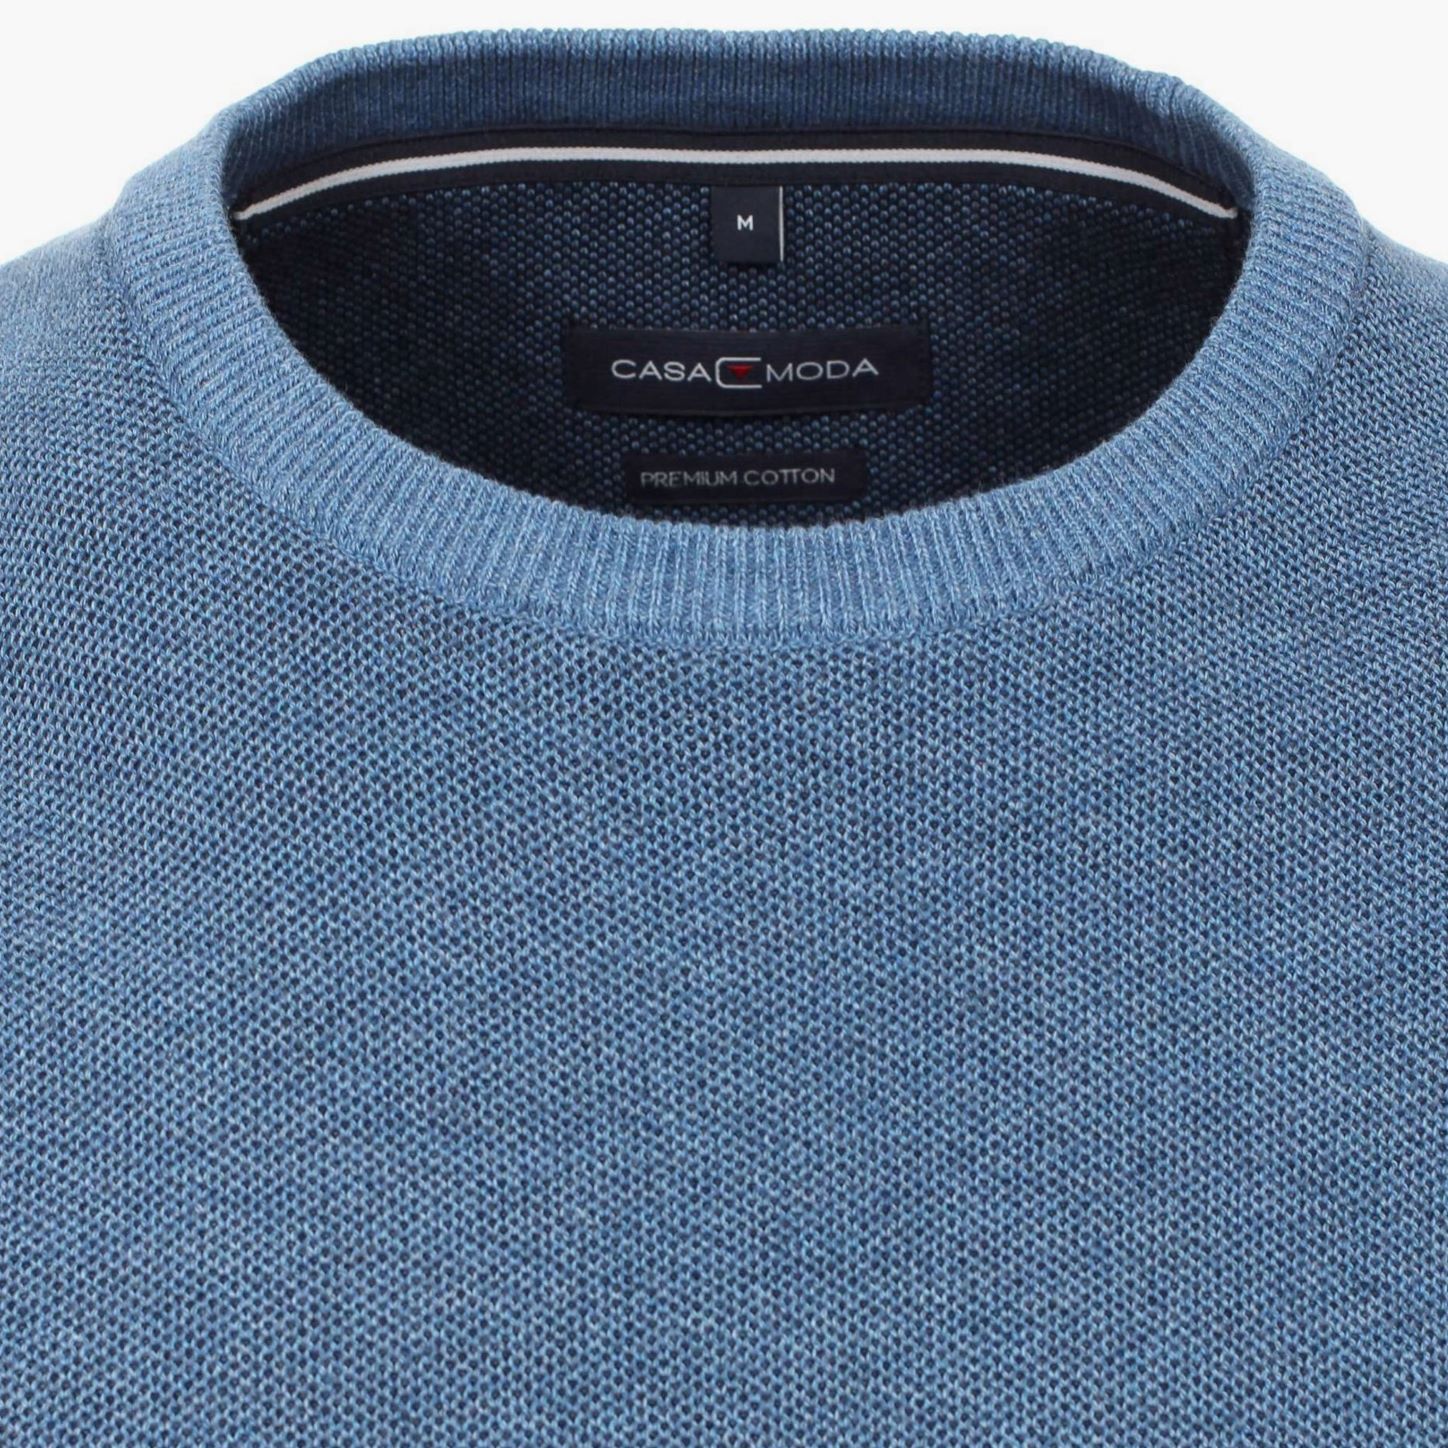 Пуловер мужской Casamoda 413705800-127 цвет Голубой